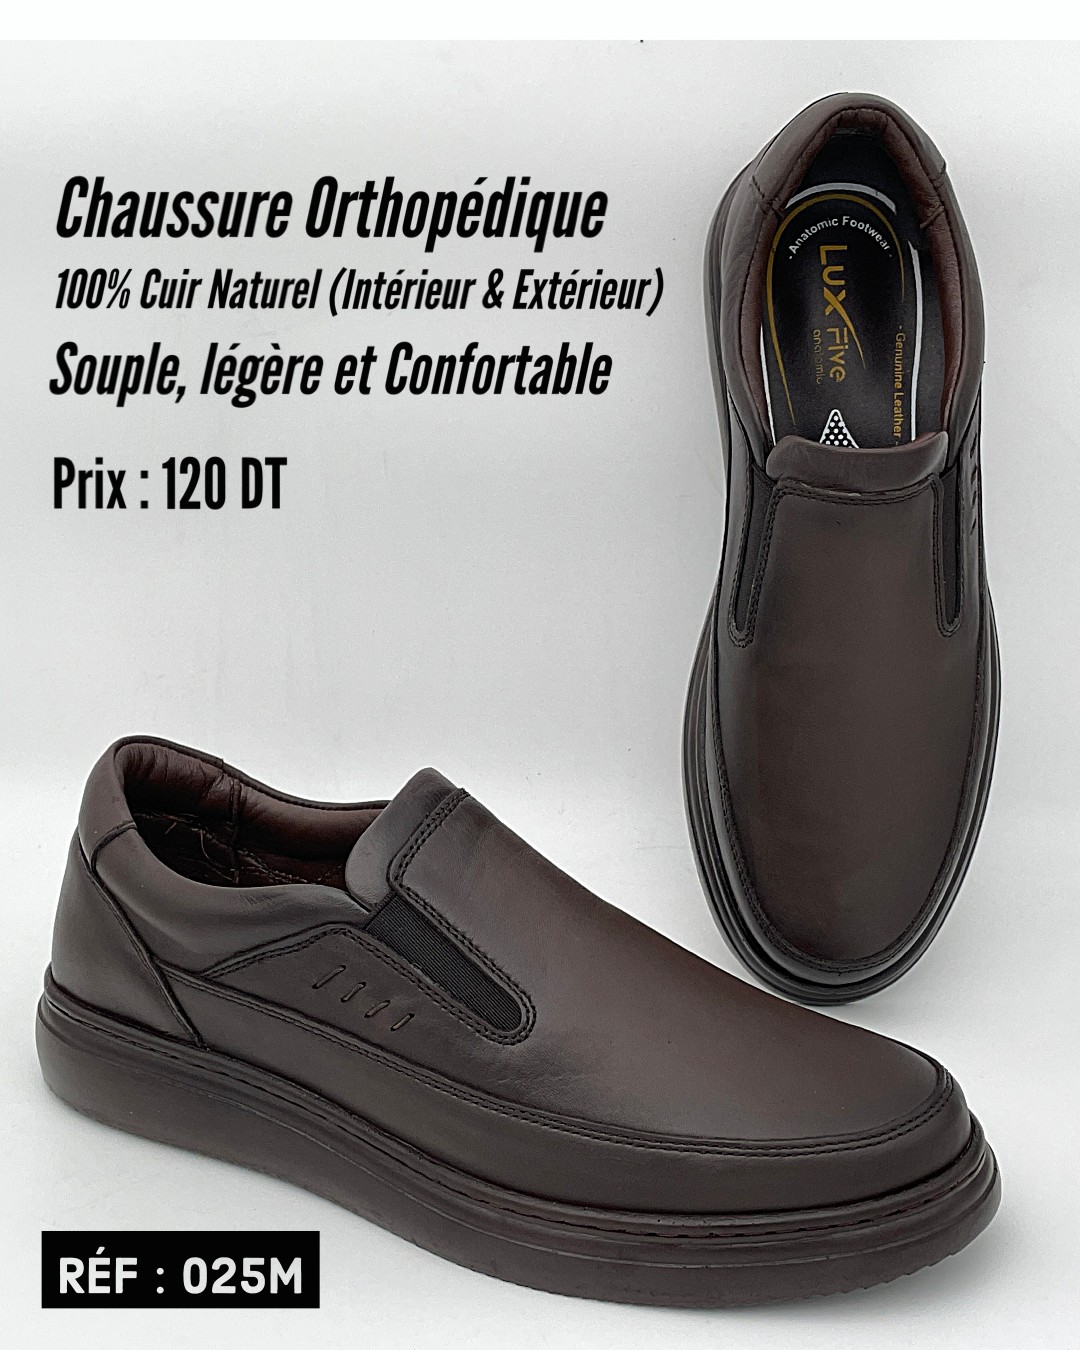 Luxmark.tn - 😎 Chaussures orthopédiques en cuir véritable (100